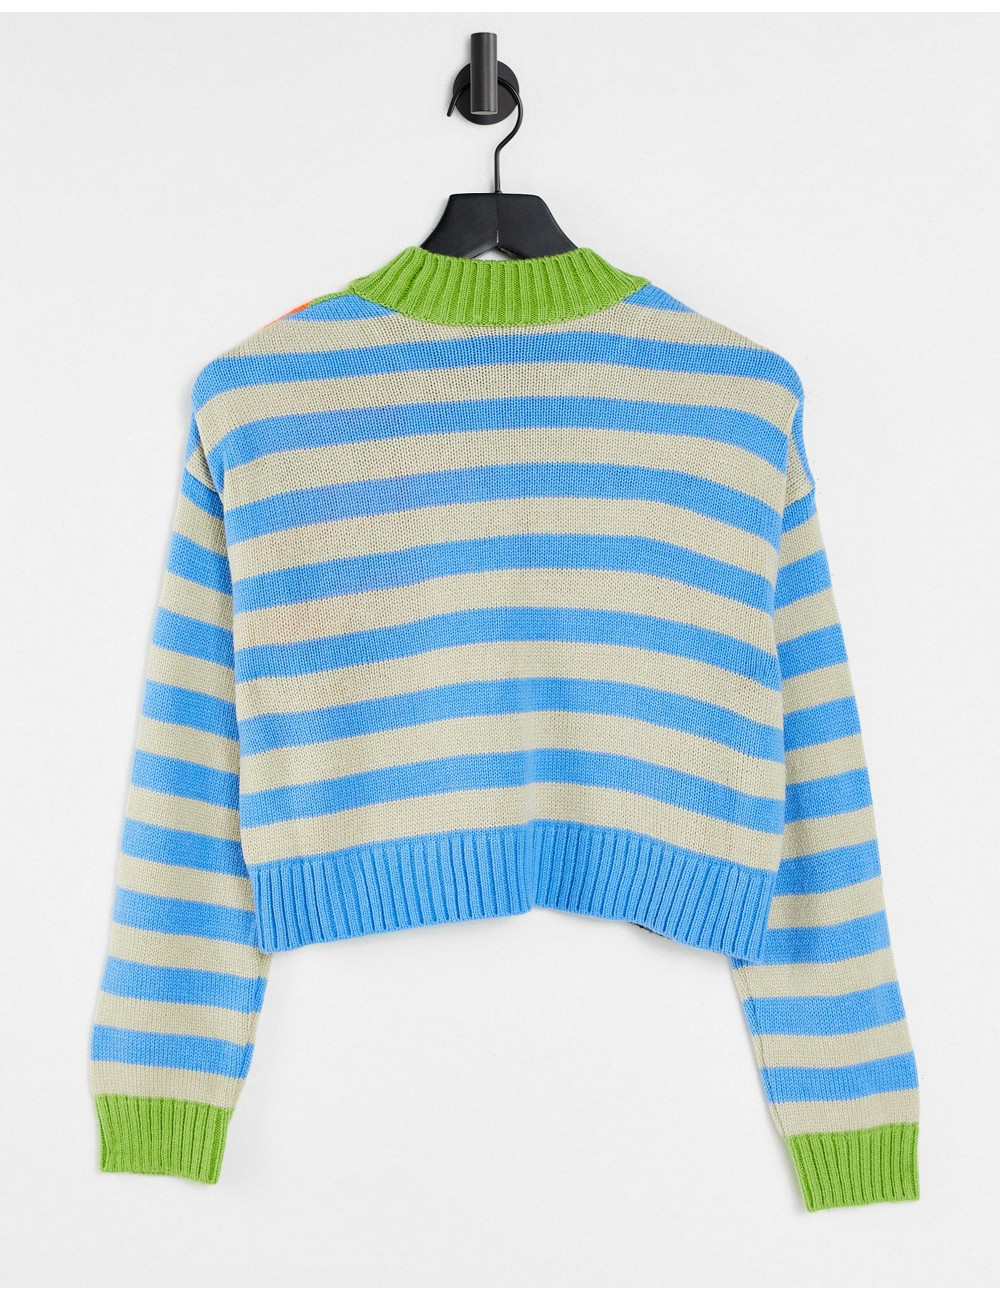 COLLUSION boxy striped jumper